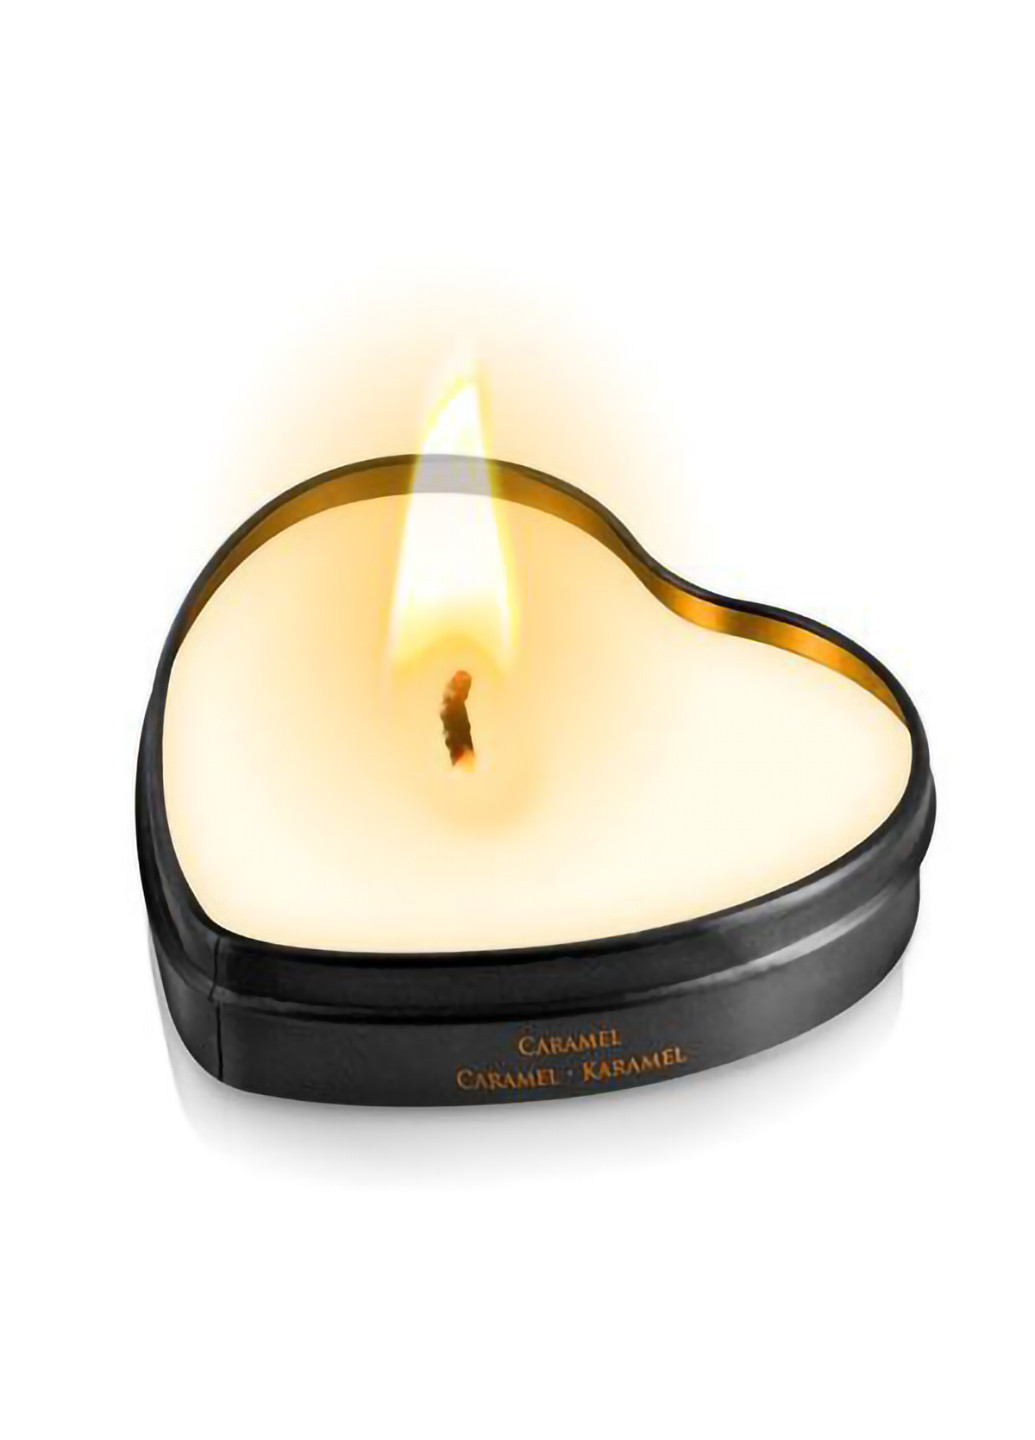 Массажная свеча сердечко Caramel (35 мл) Plaisirs Secrets (254151877)